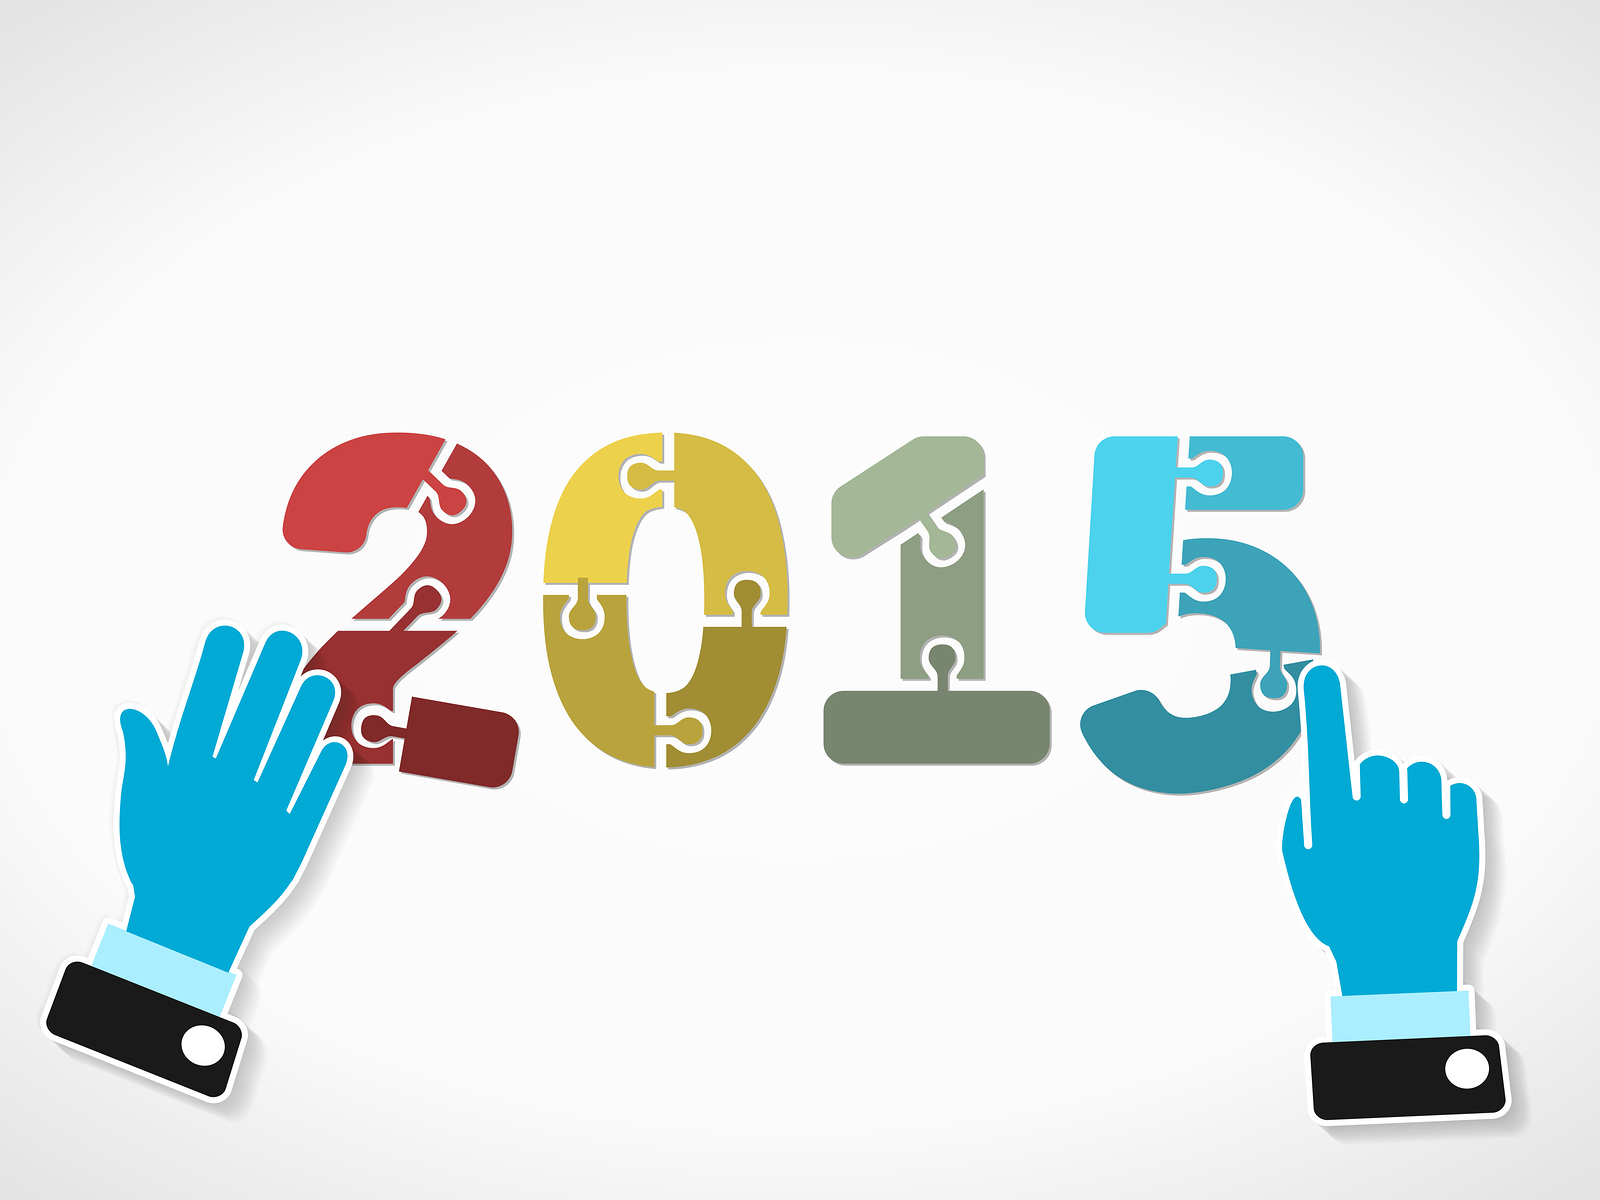 Dự báo những động thái nổi bật của kinh tế thế giới năm 2015